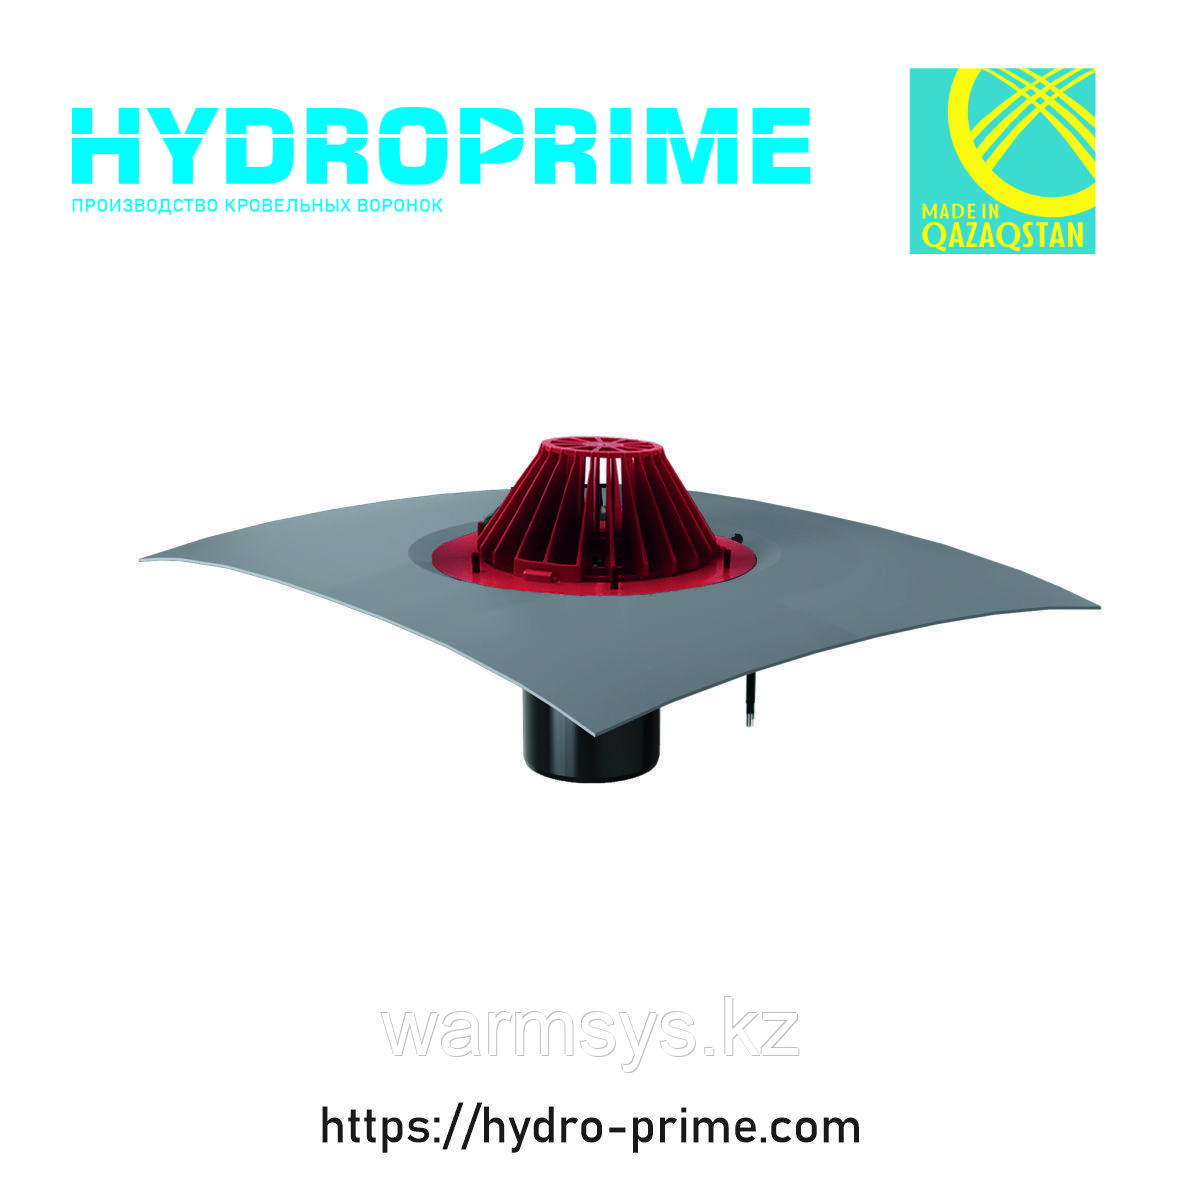 Кровельная воронка HydroPrime HPH 110x165 с обогревом и ПВХ полотном